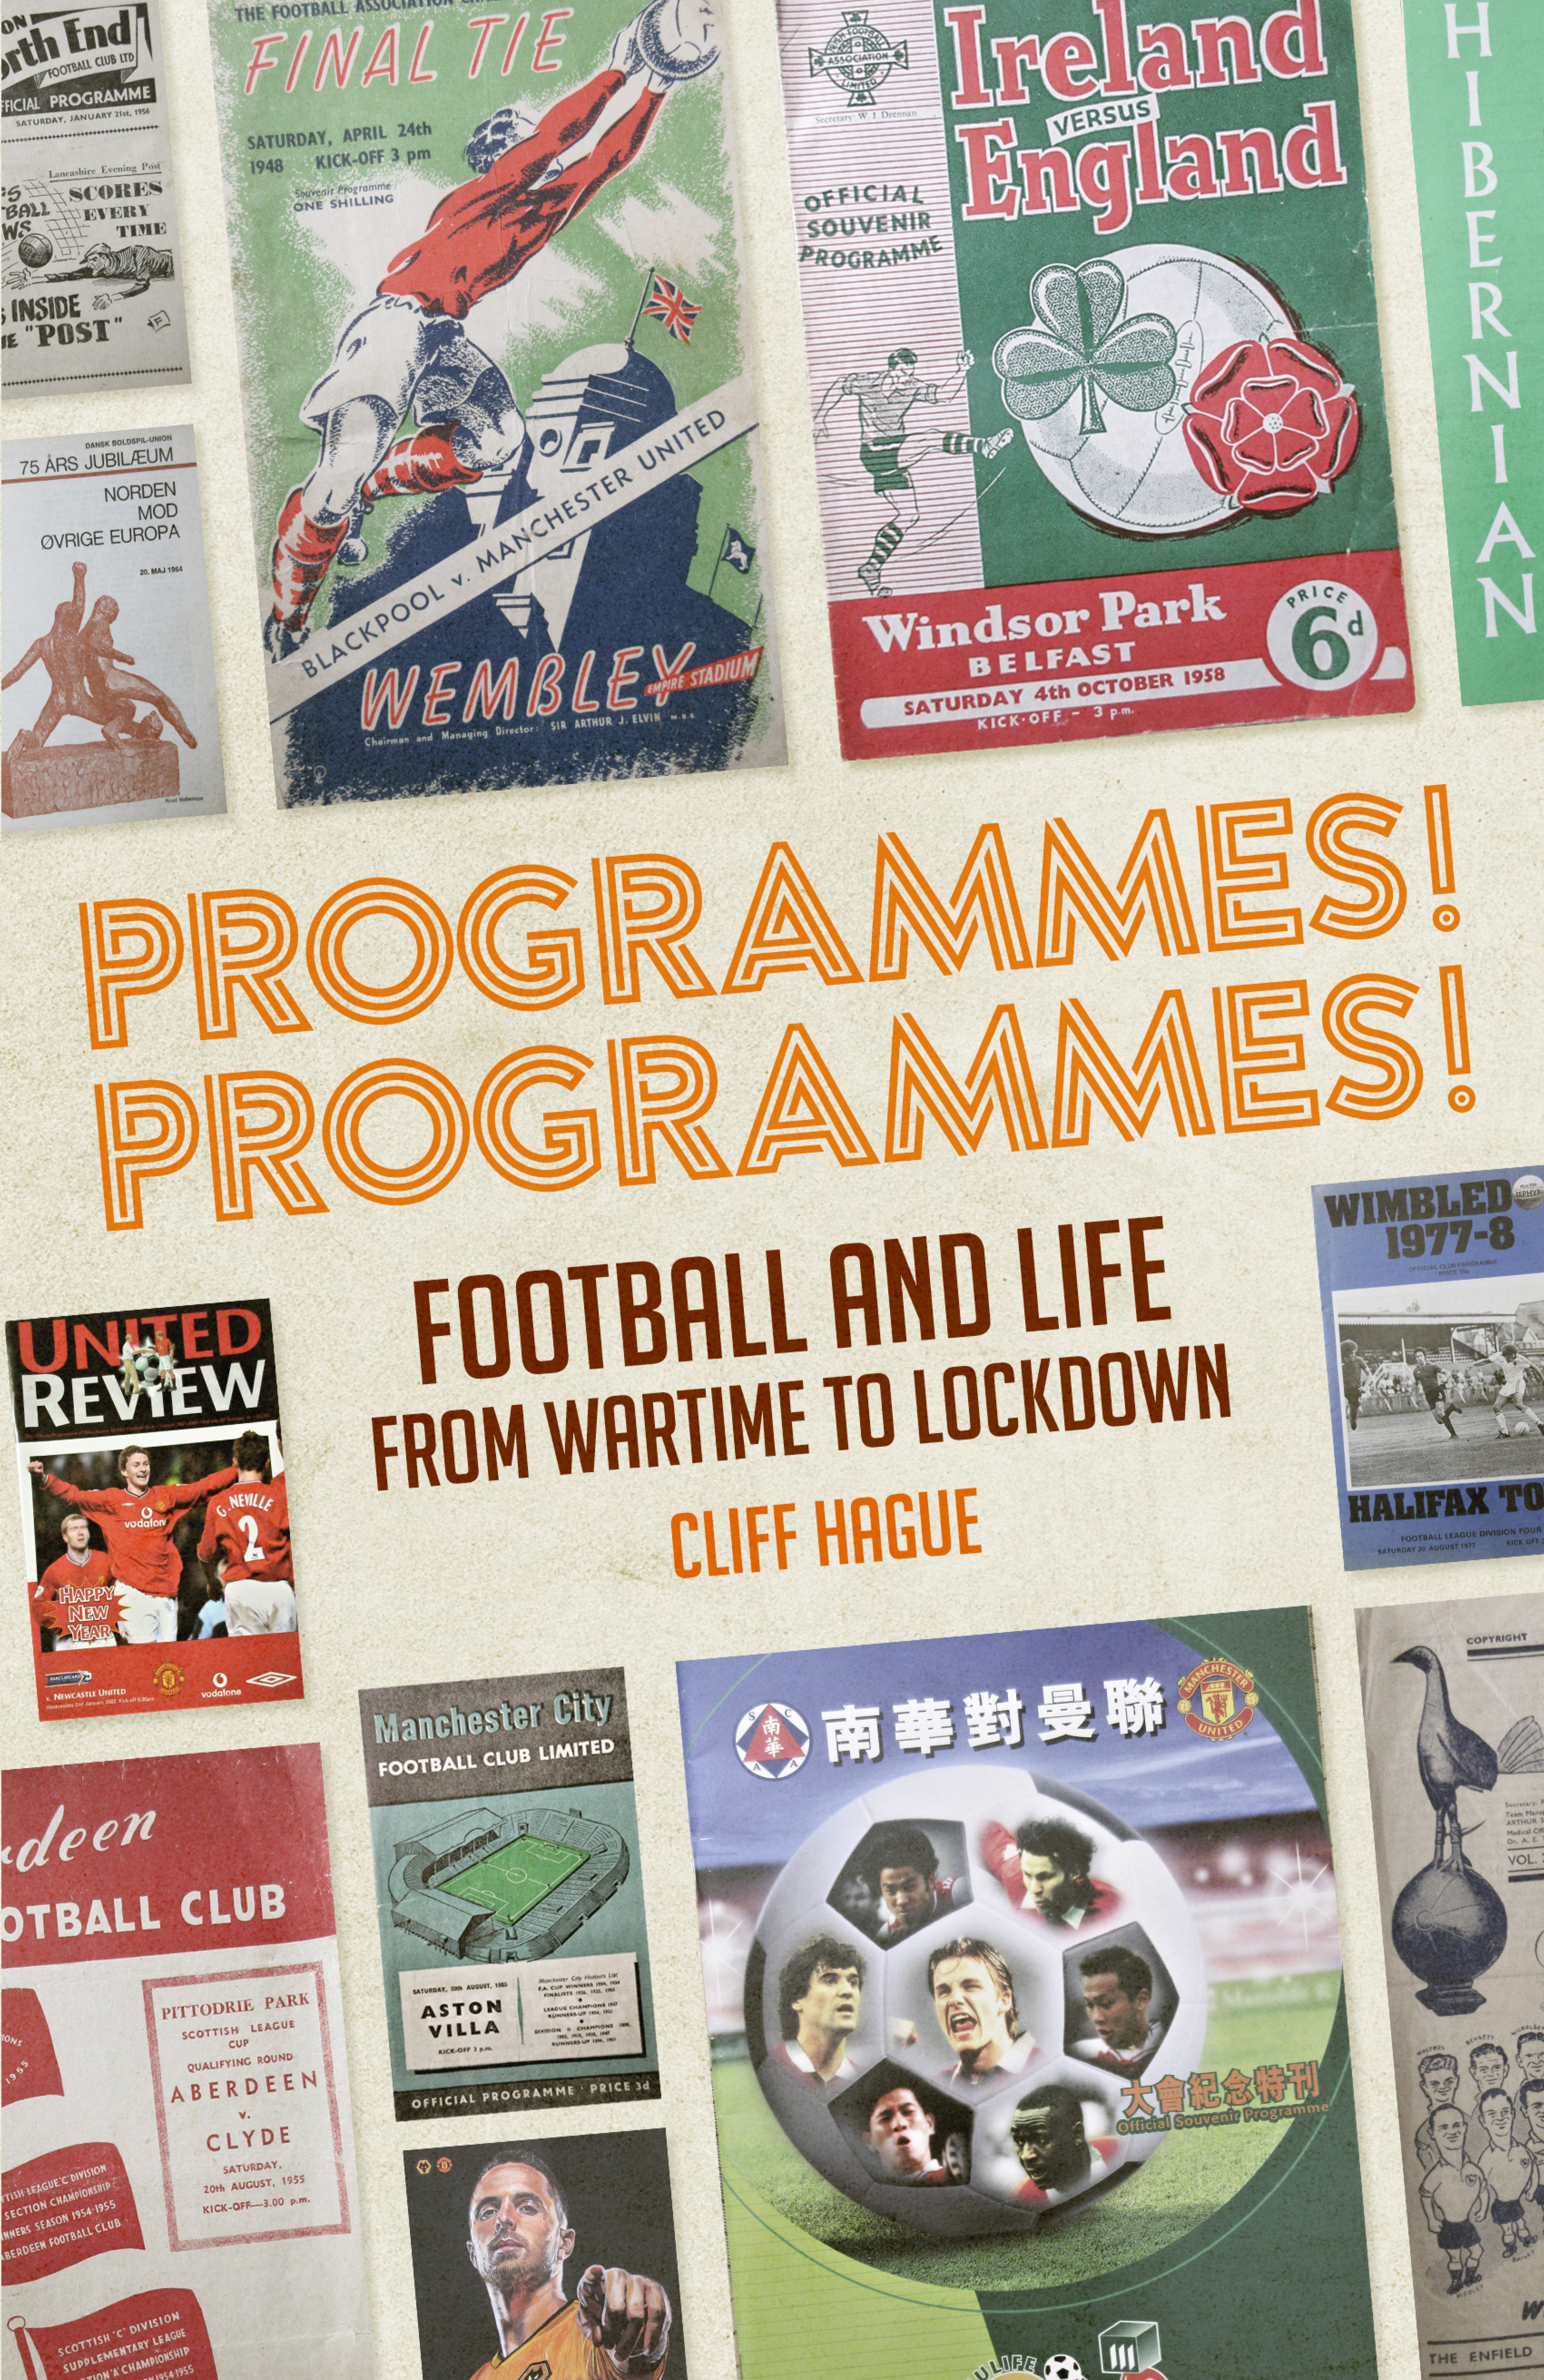 Programmes! Programmes!